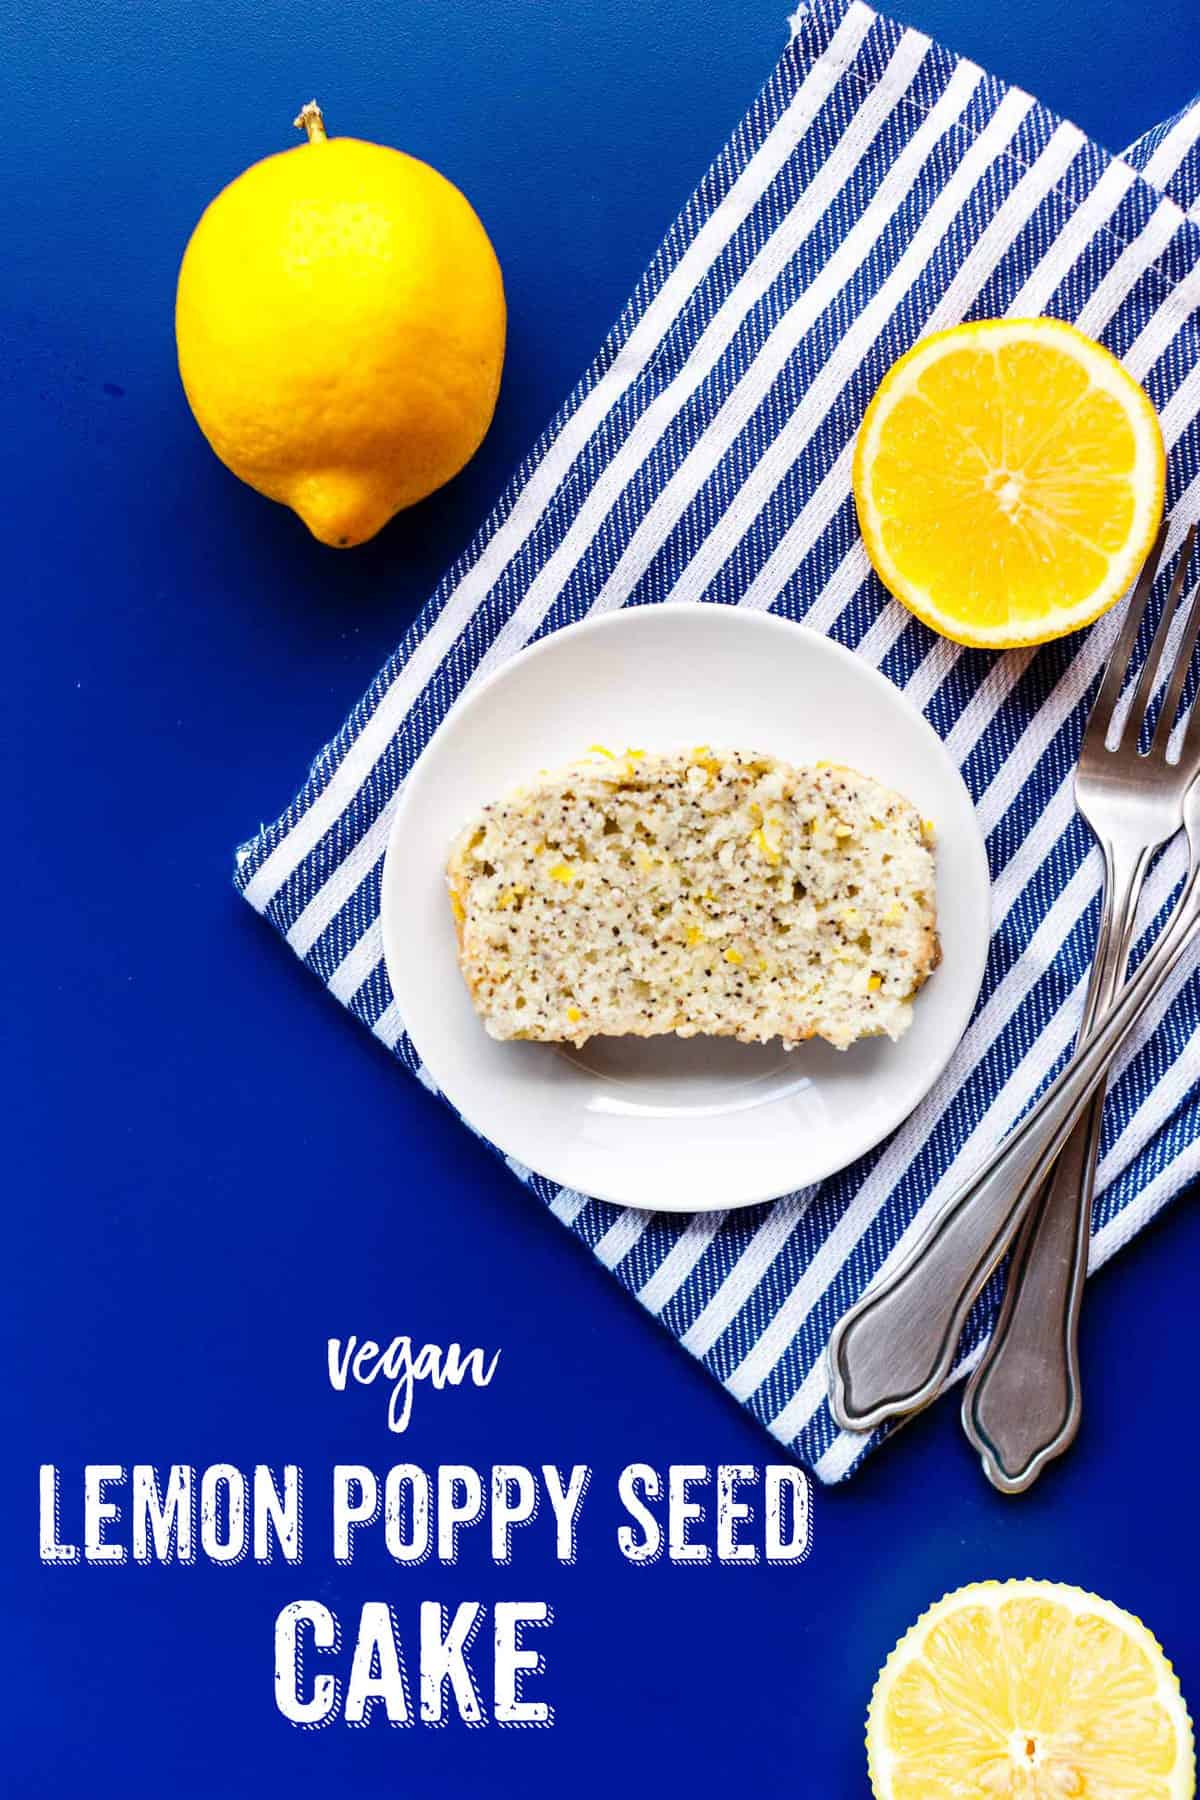 A slice of Vegan Lemon Poppy Seed Cake on a striped kitchen towel.